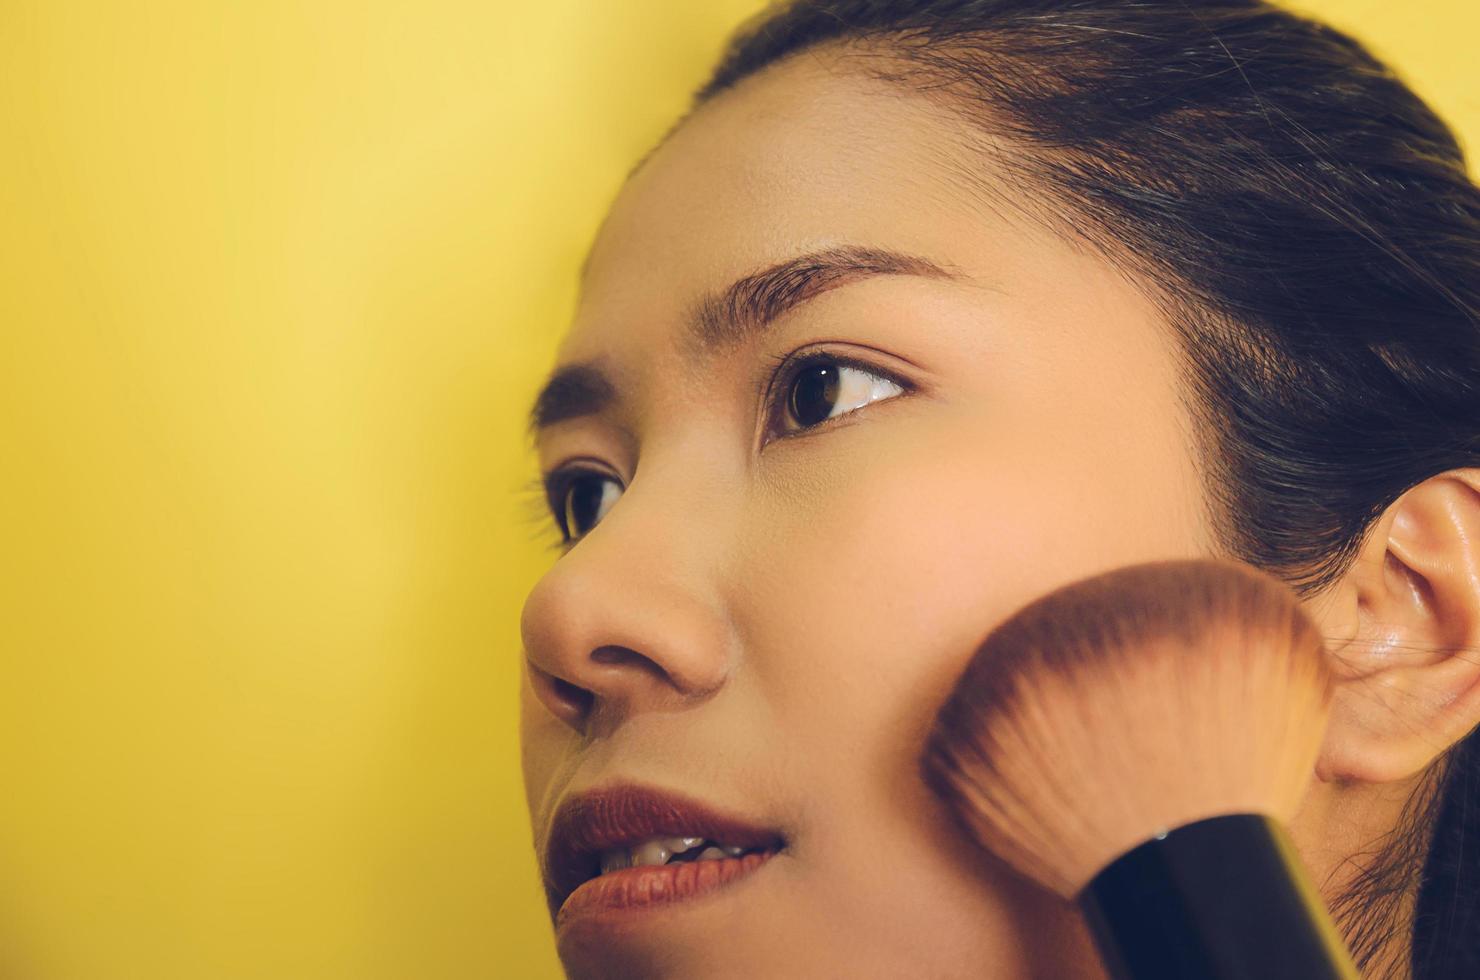 skönhet ansikte av asiatisk kvinna genom att applicera borstar på huden med kosmetika. foto